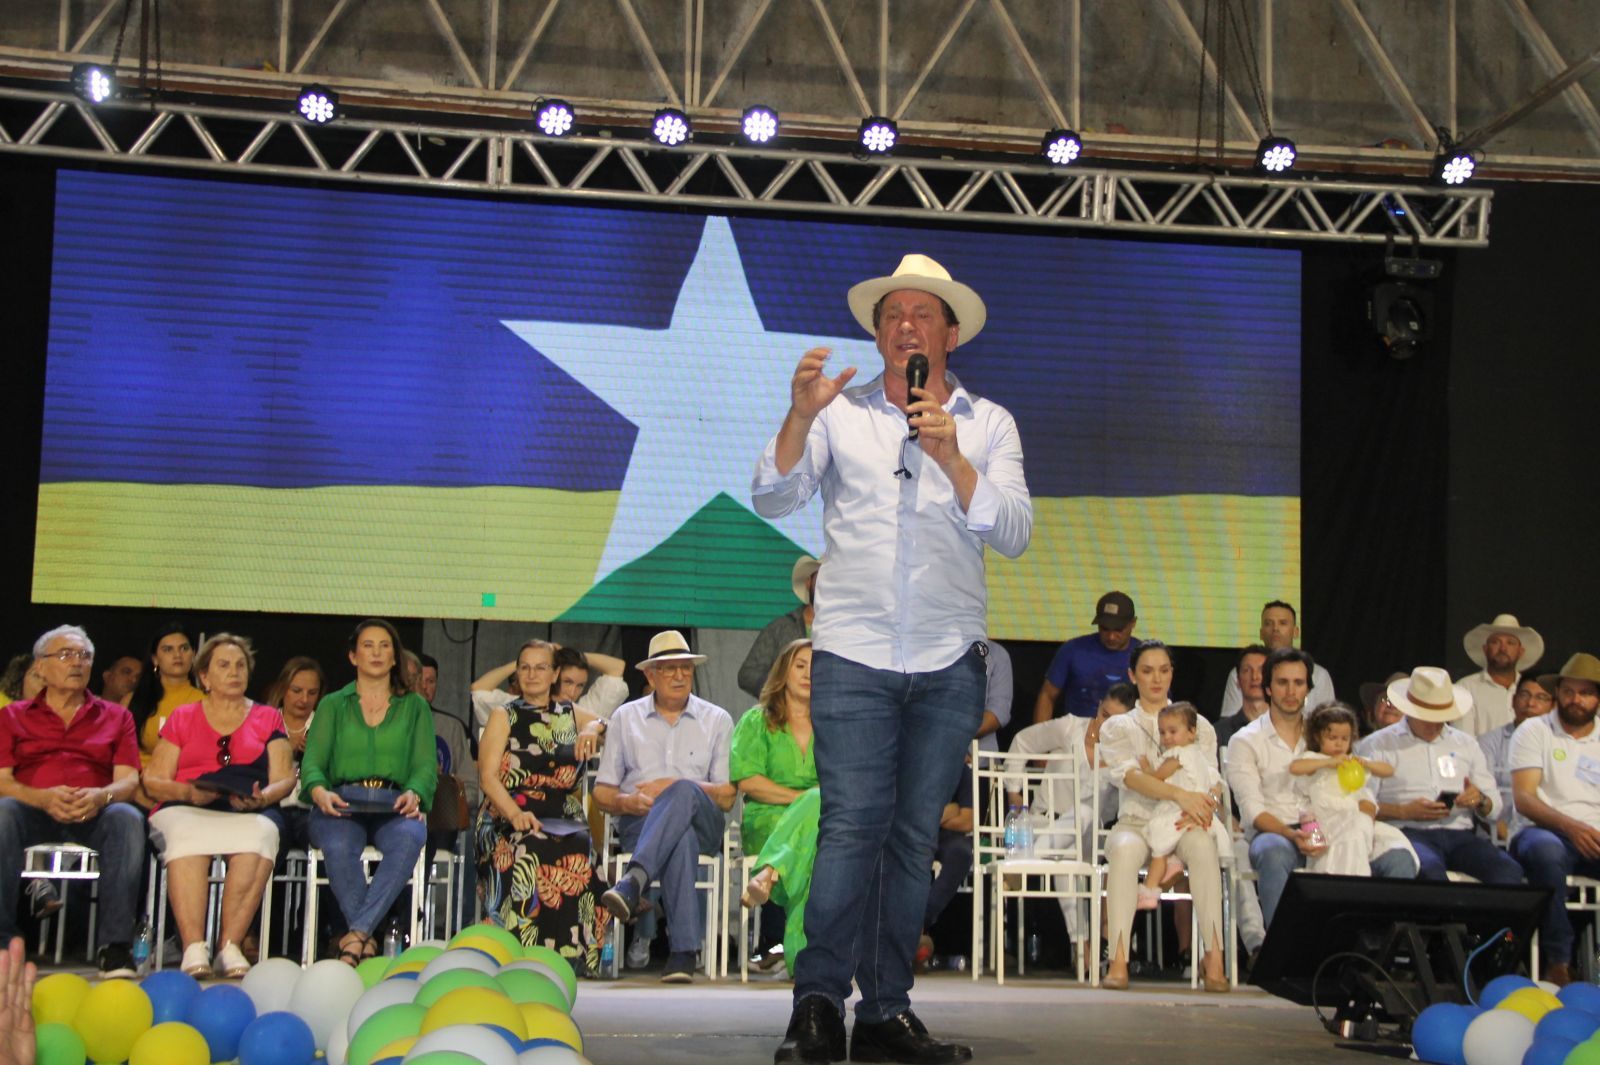 Nada muda: Ivo Cassol segue firme na pré-campanha e tranquiliza apoiadores - News Rondônia